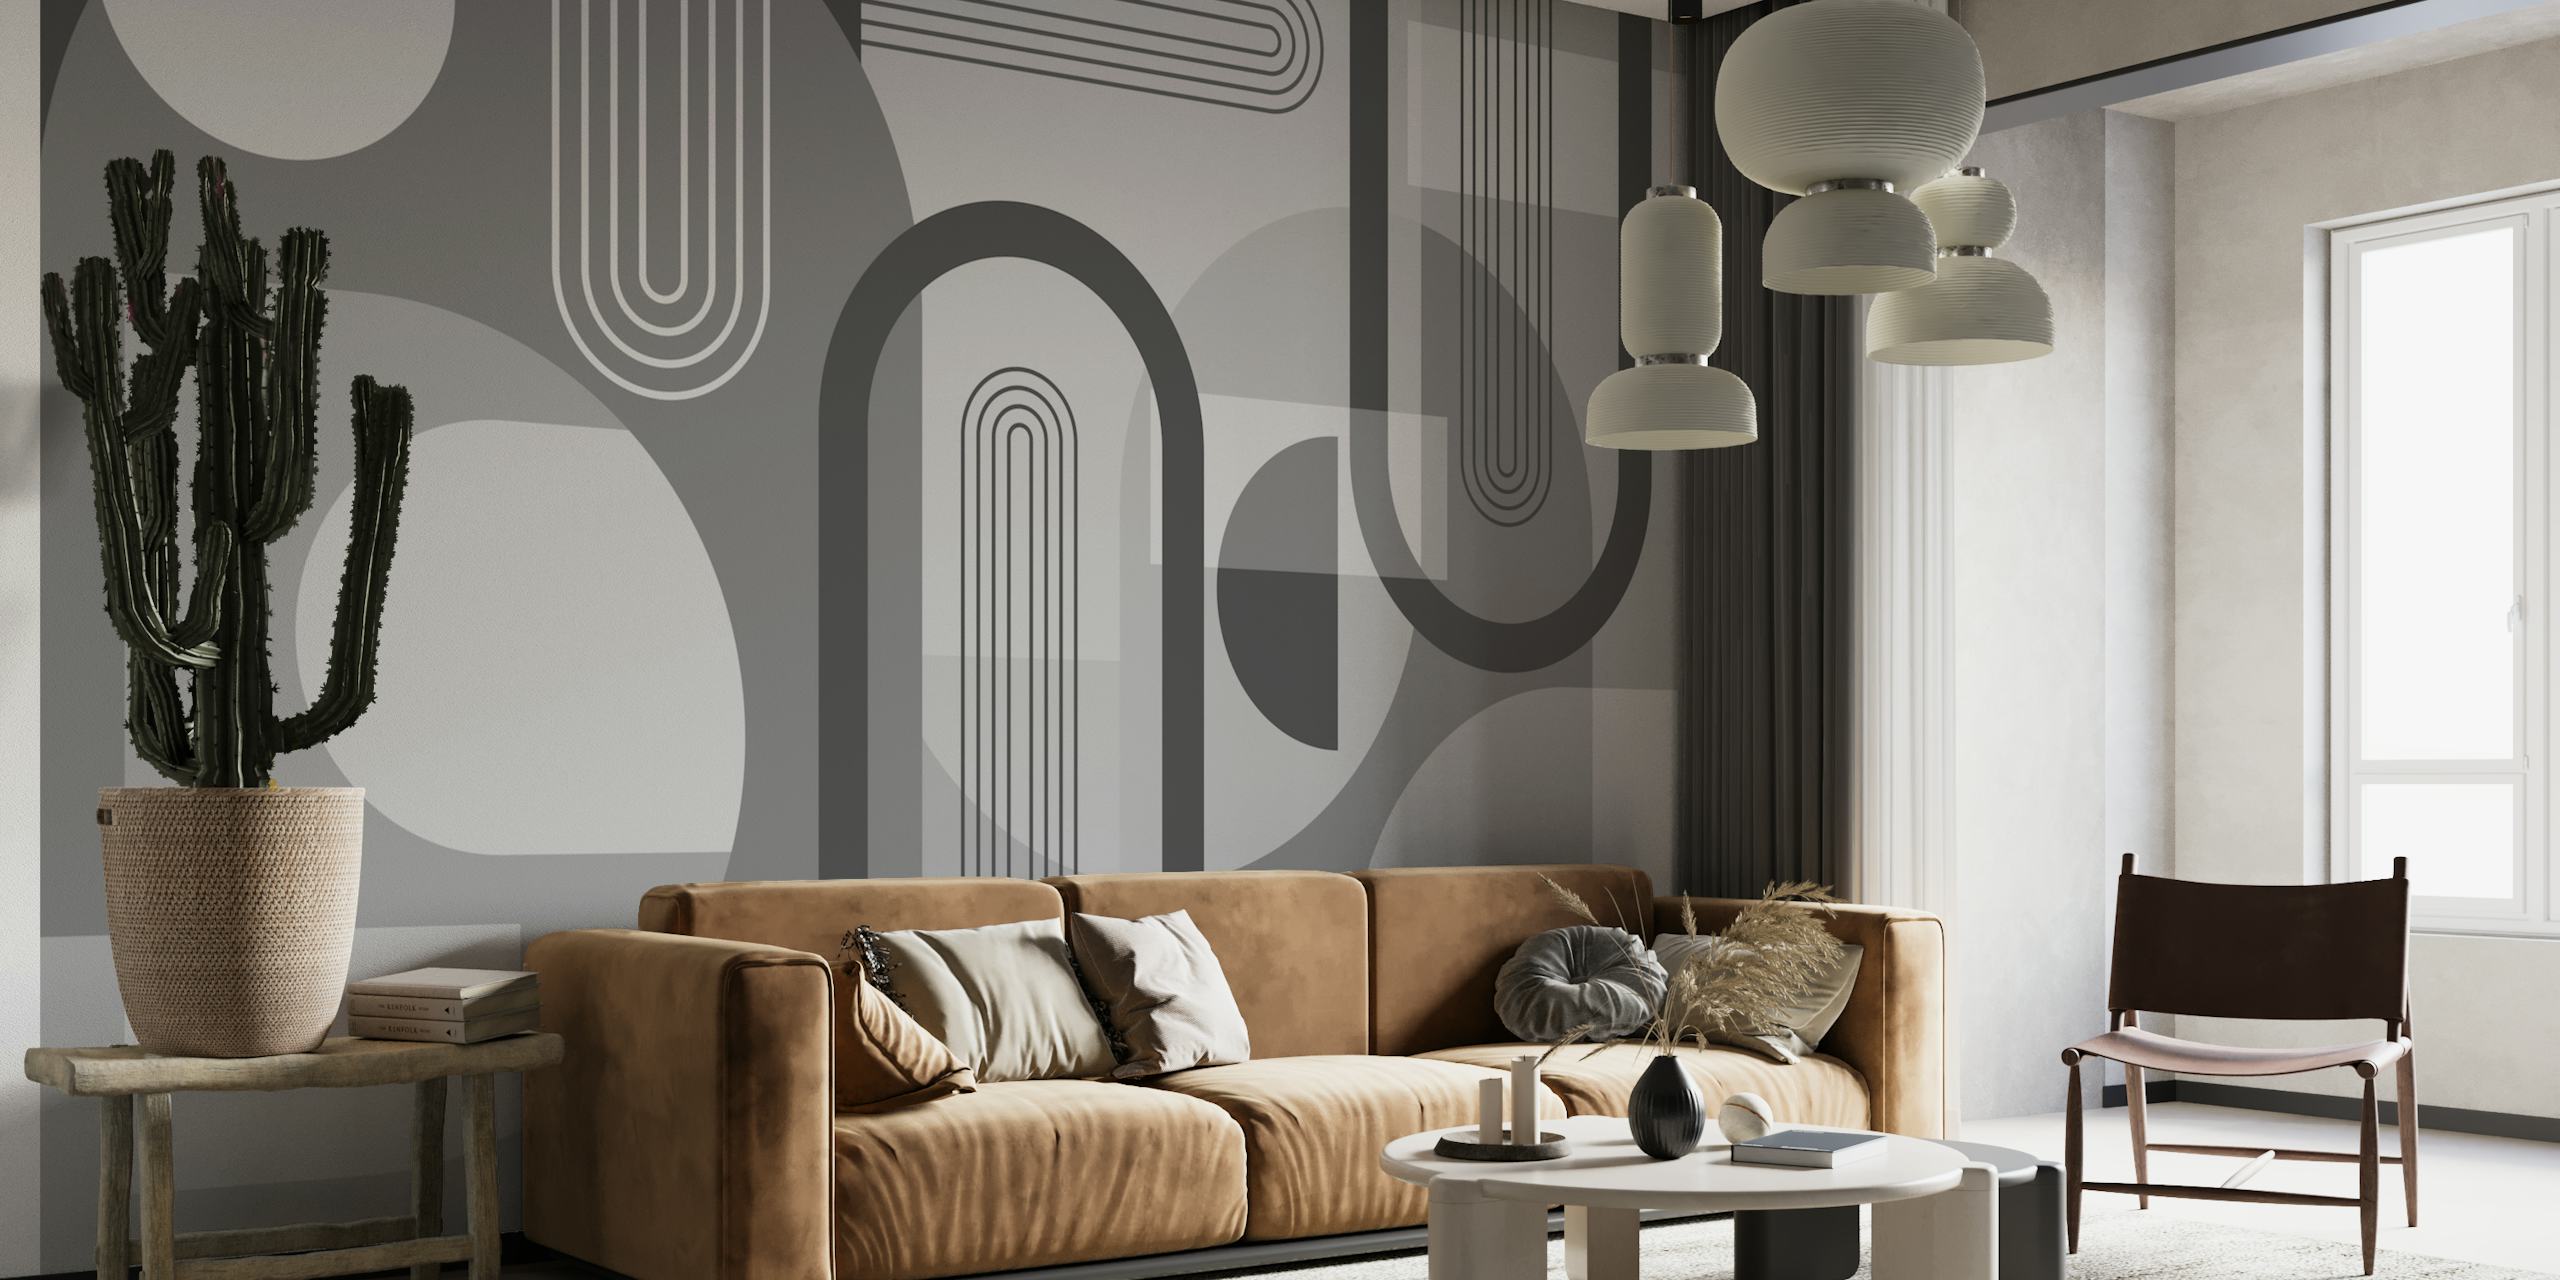 Mural de parede com arcos abstratos em tons de cinza para decoração contemporânea